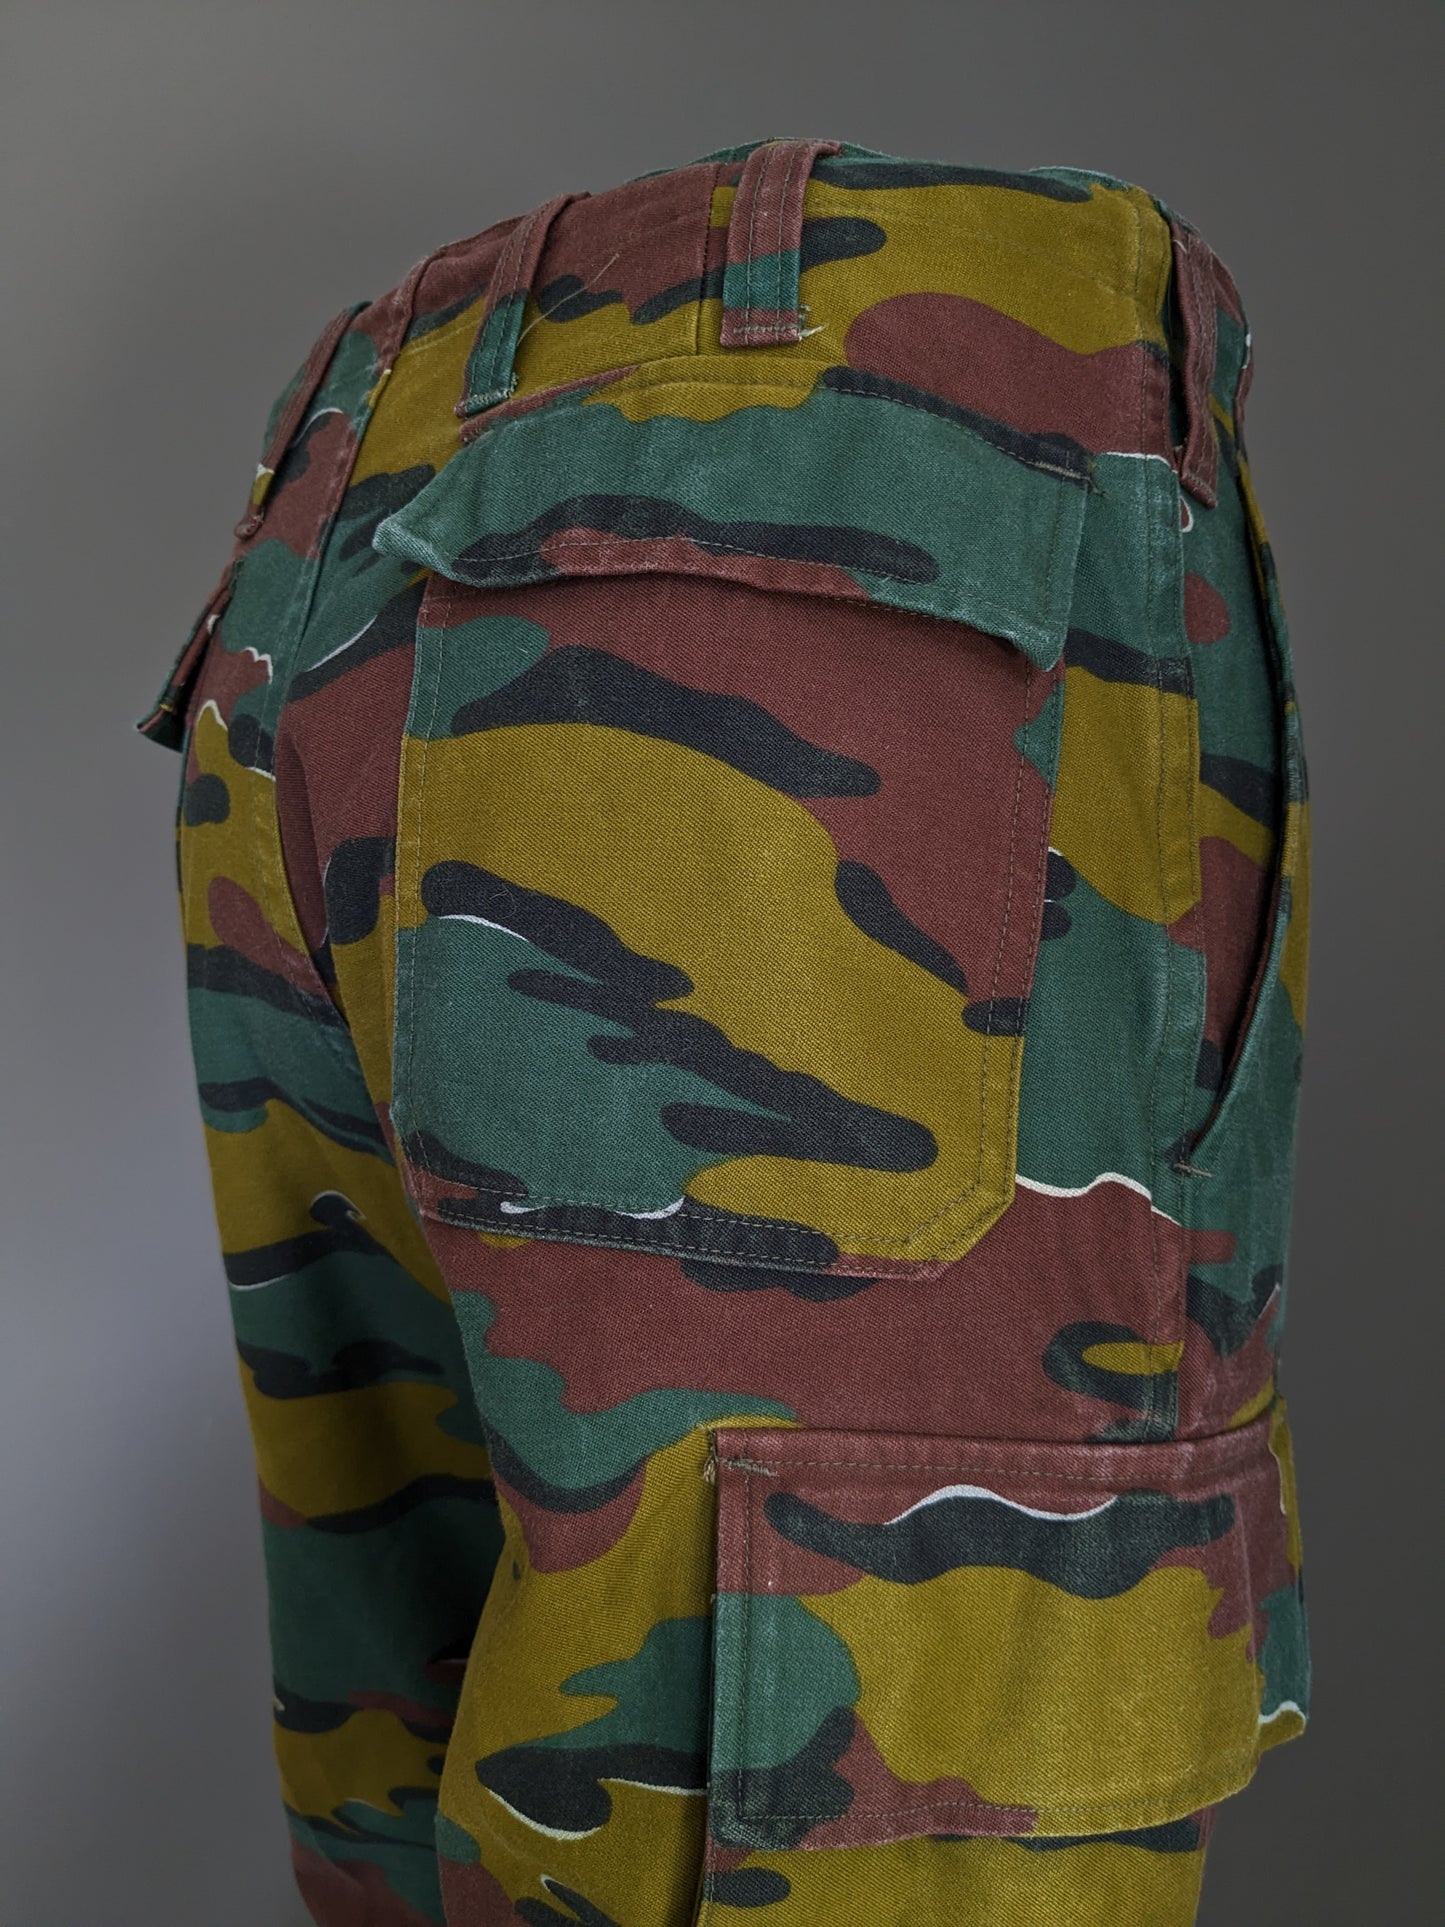 Pantalones del ejército / ejército. Impresión de camuflaje verde marrón. Tamaño M / L.